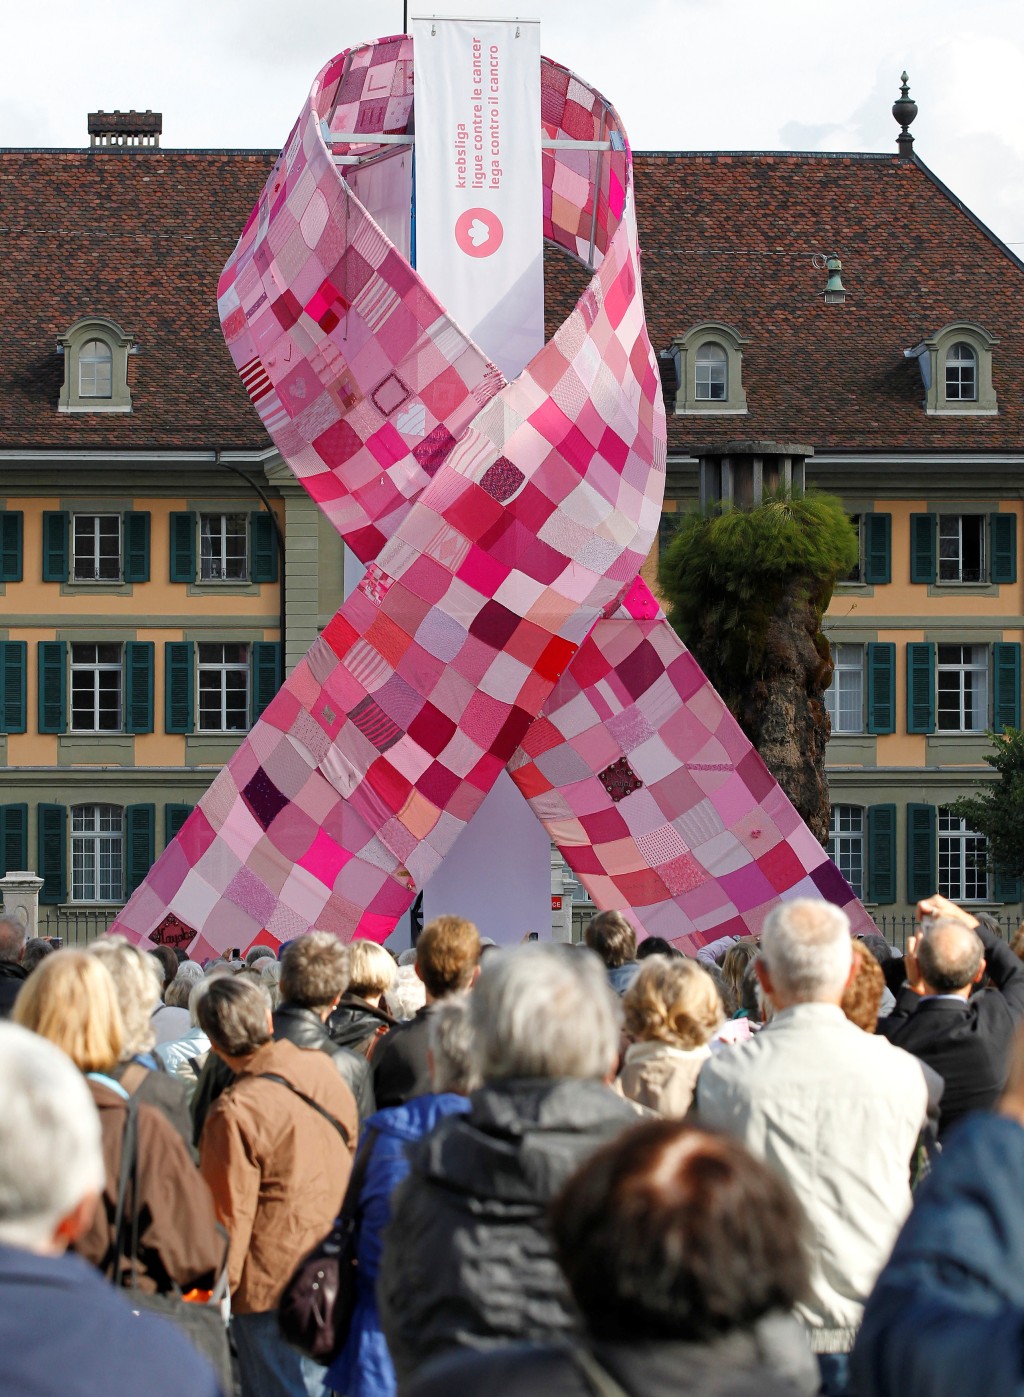 瑞士伯恩市一個象徵支持對抗乳癌的12米高巨型粉紅絲帶。 路透社